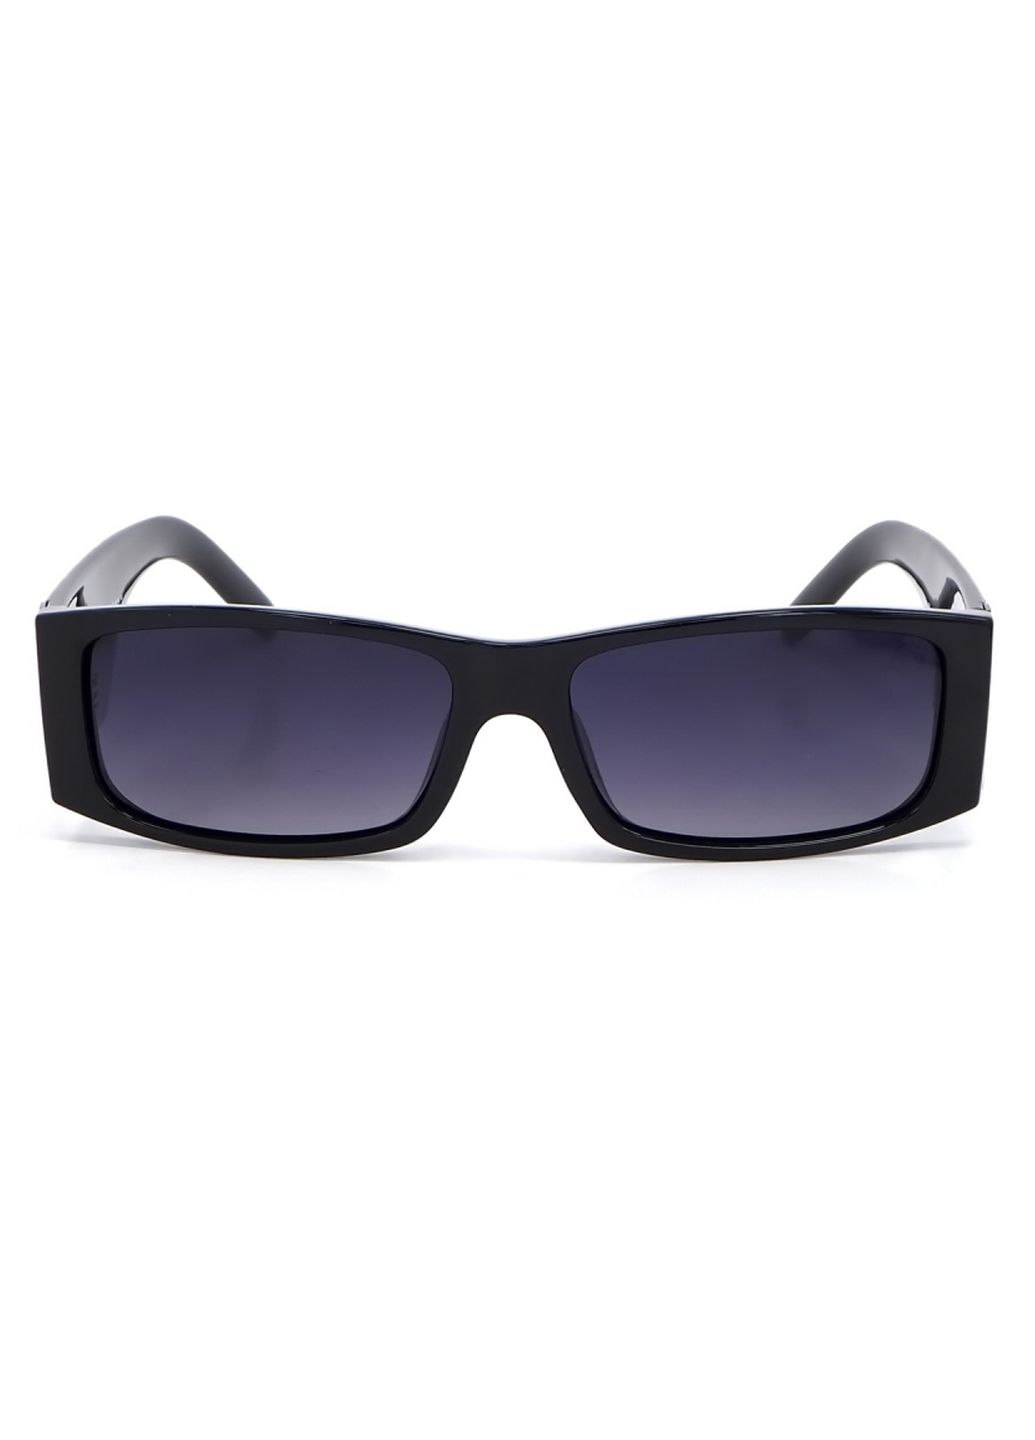 Купить Женские солнцезащитные очки Roberto с поляризацией RM8456 113058 в интернет-магазине